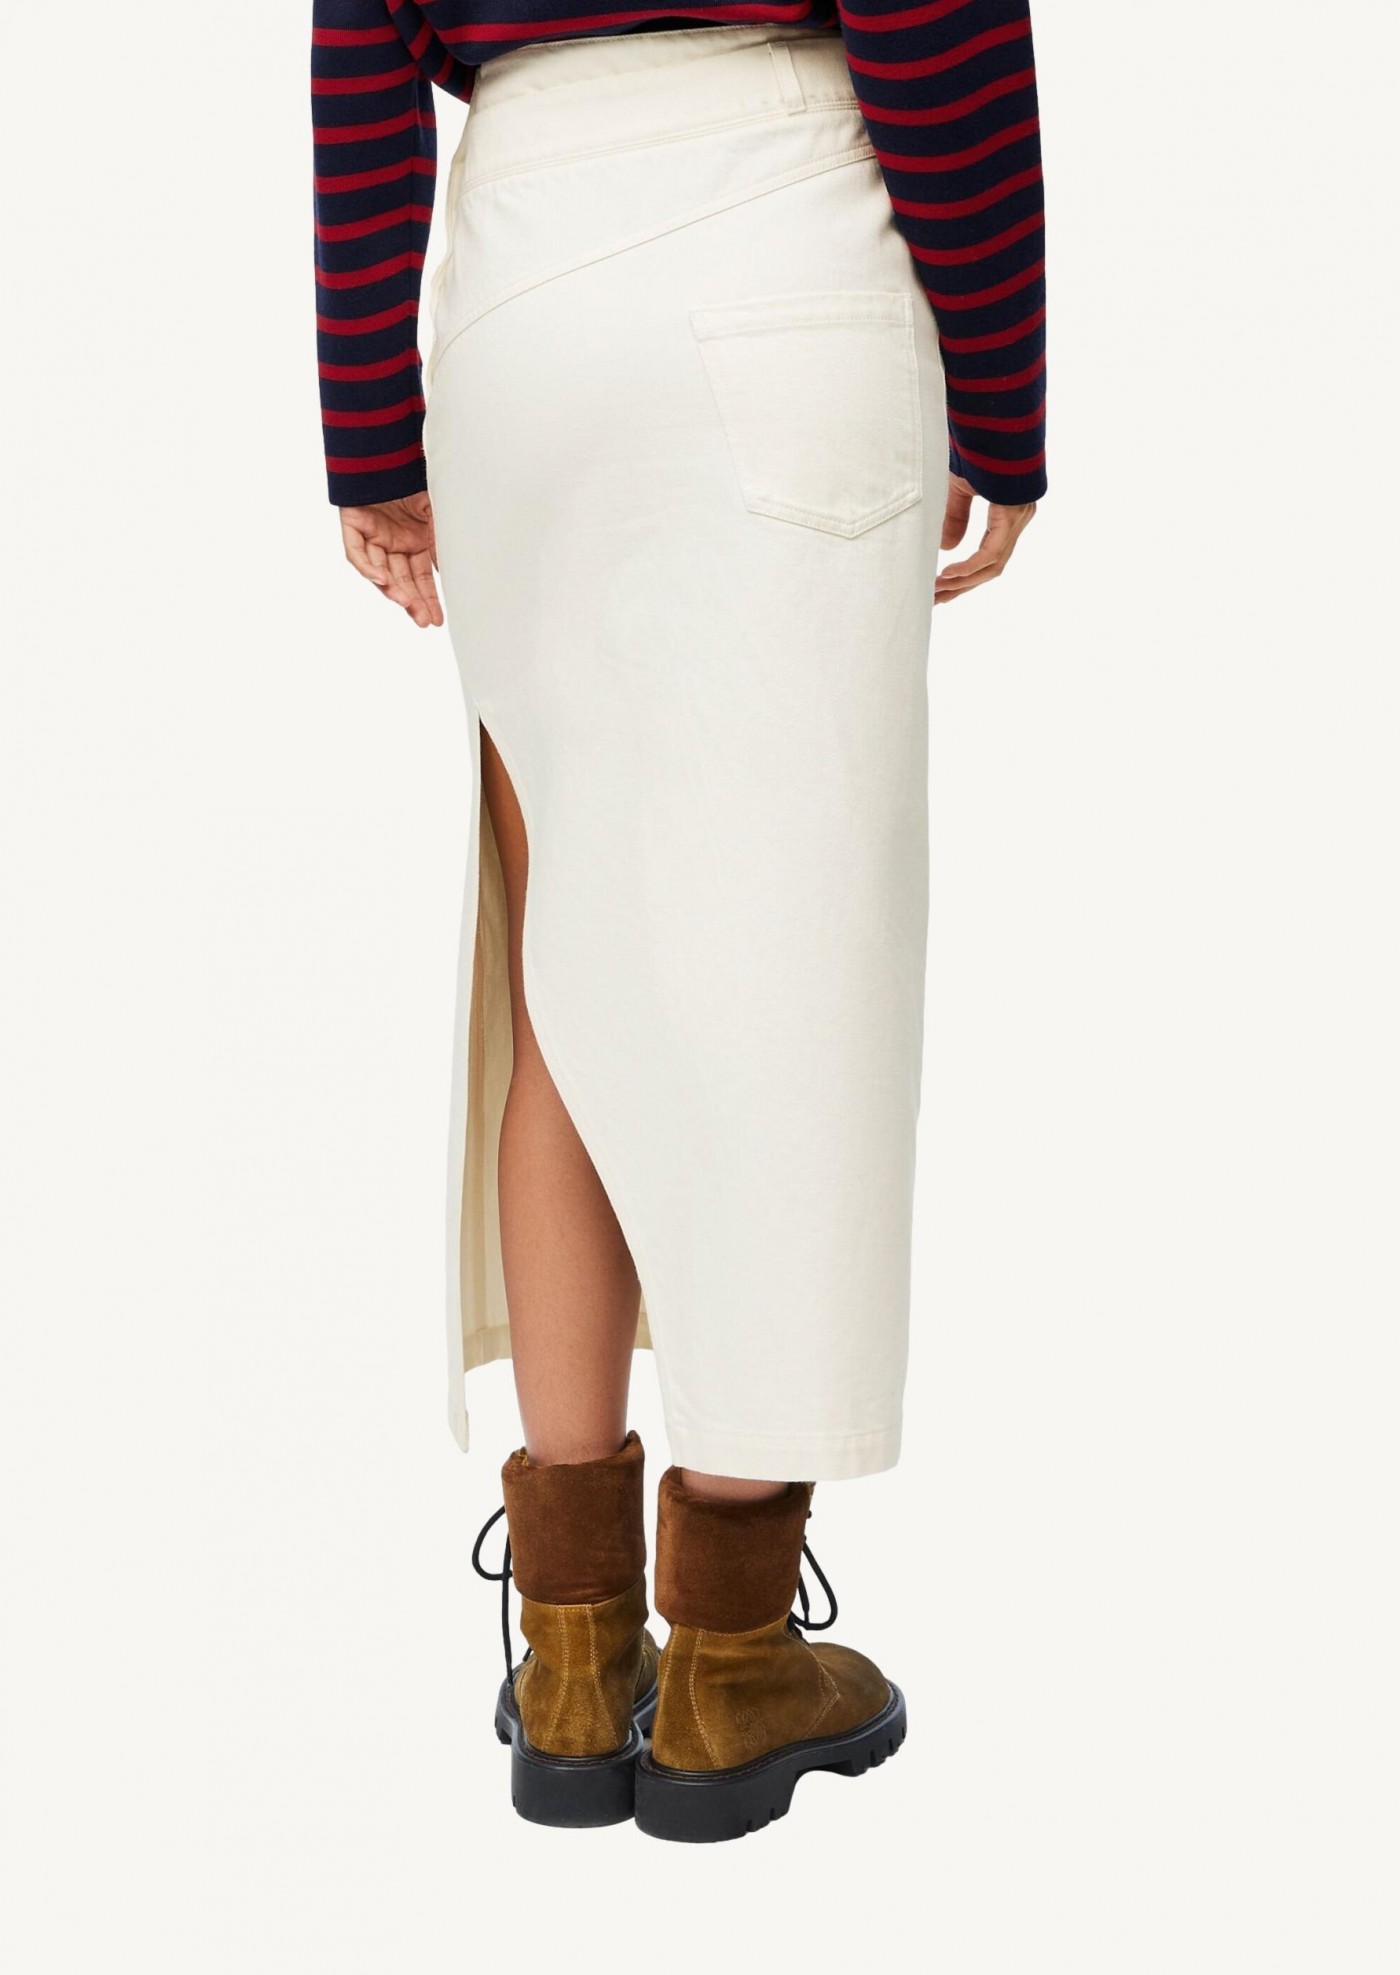 Deconstructed skirt in denim white